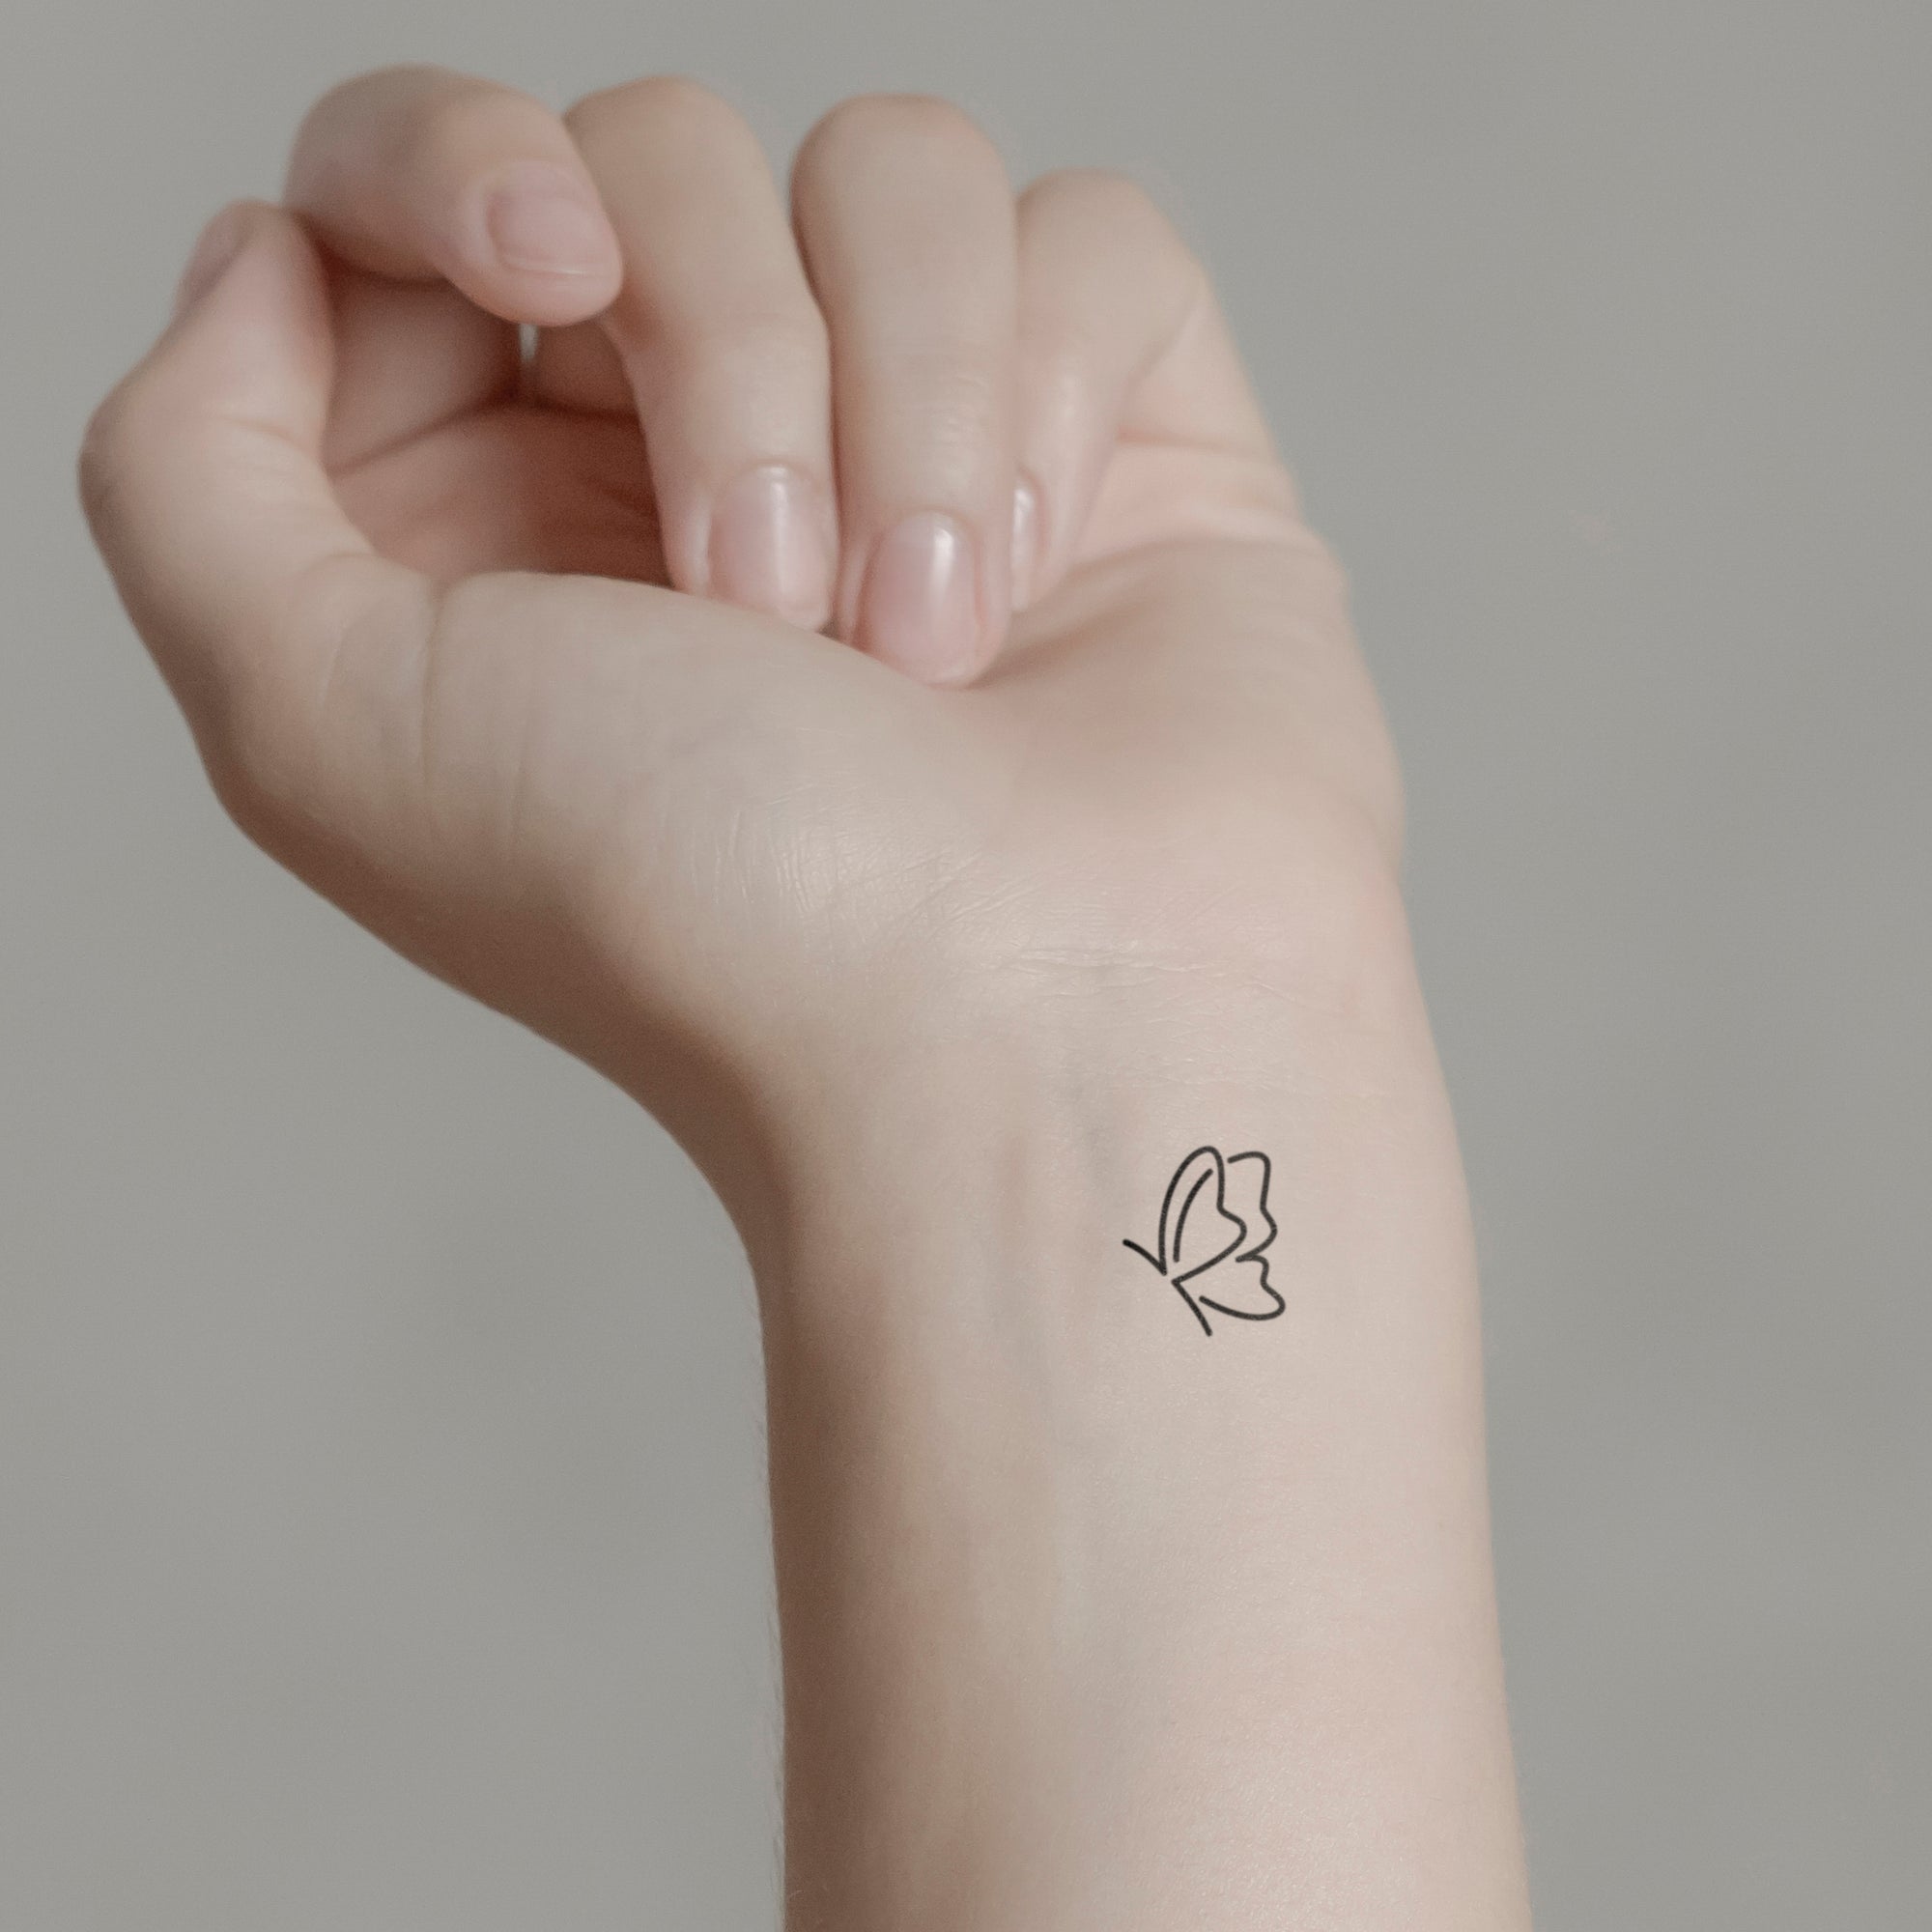 Zarter Schmetterling Tattoo von minink, der Marke für temporäre Tattoos.